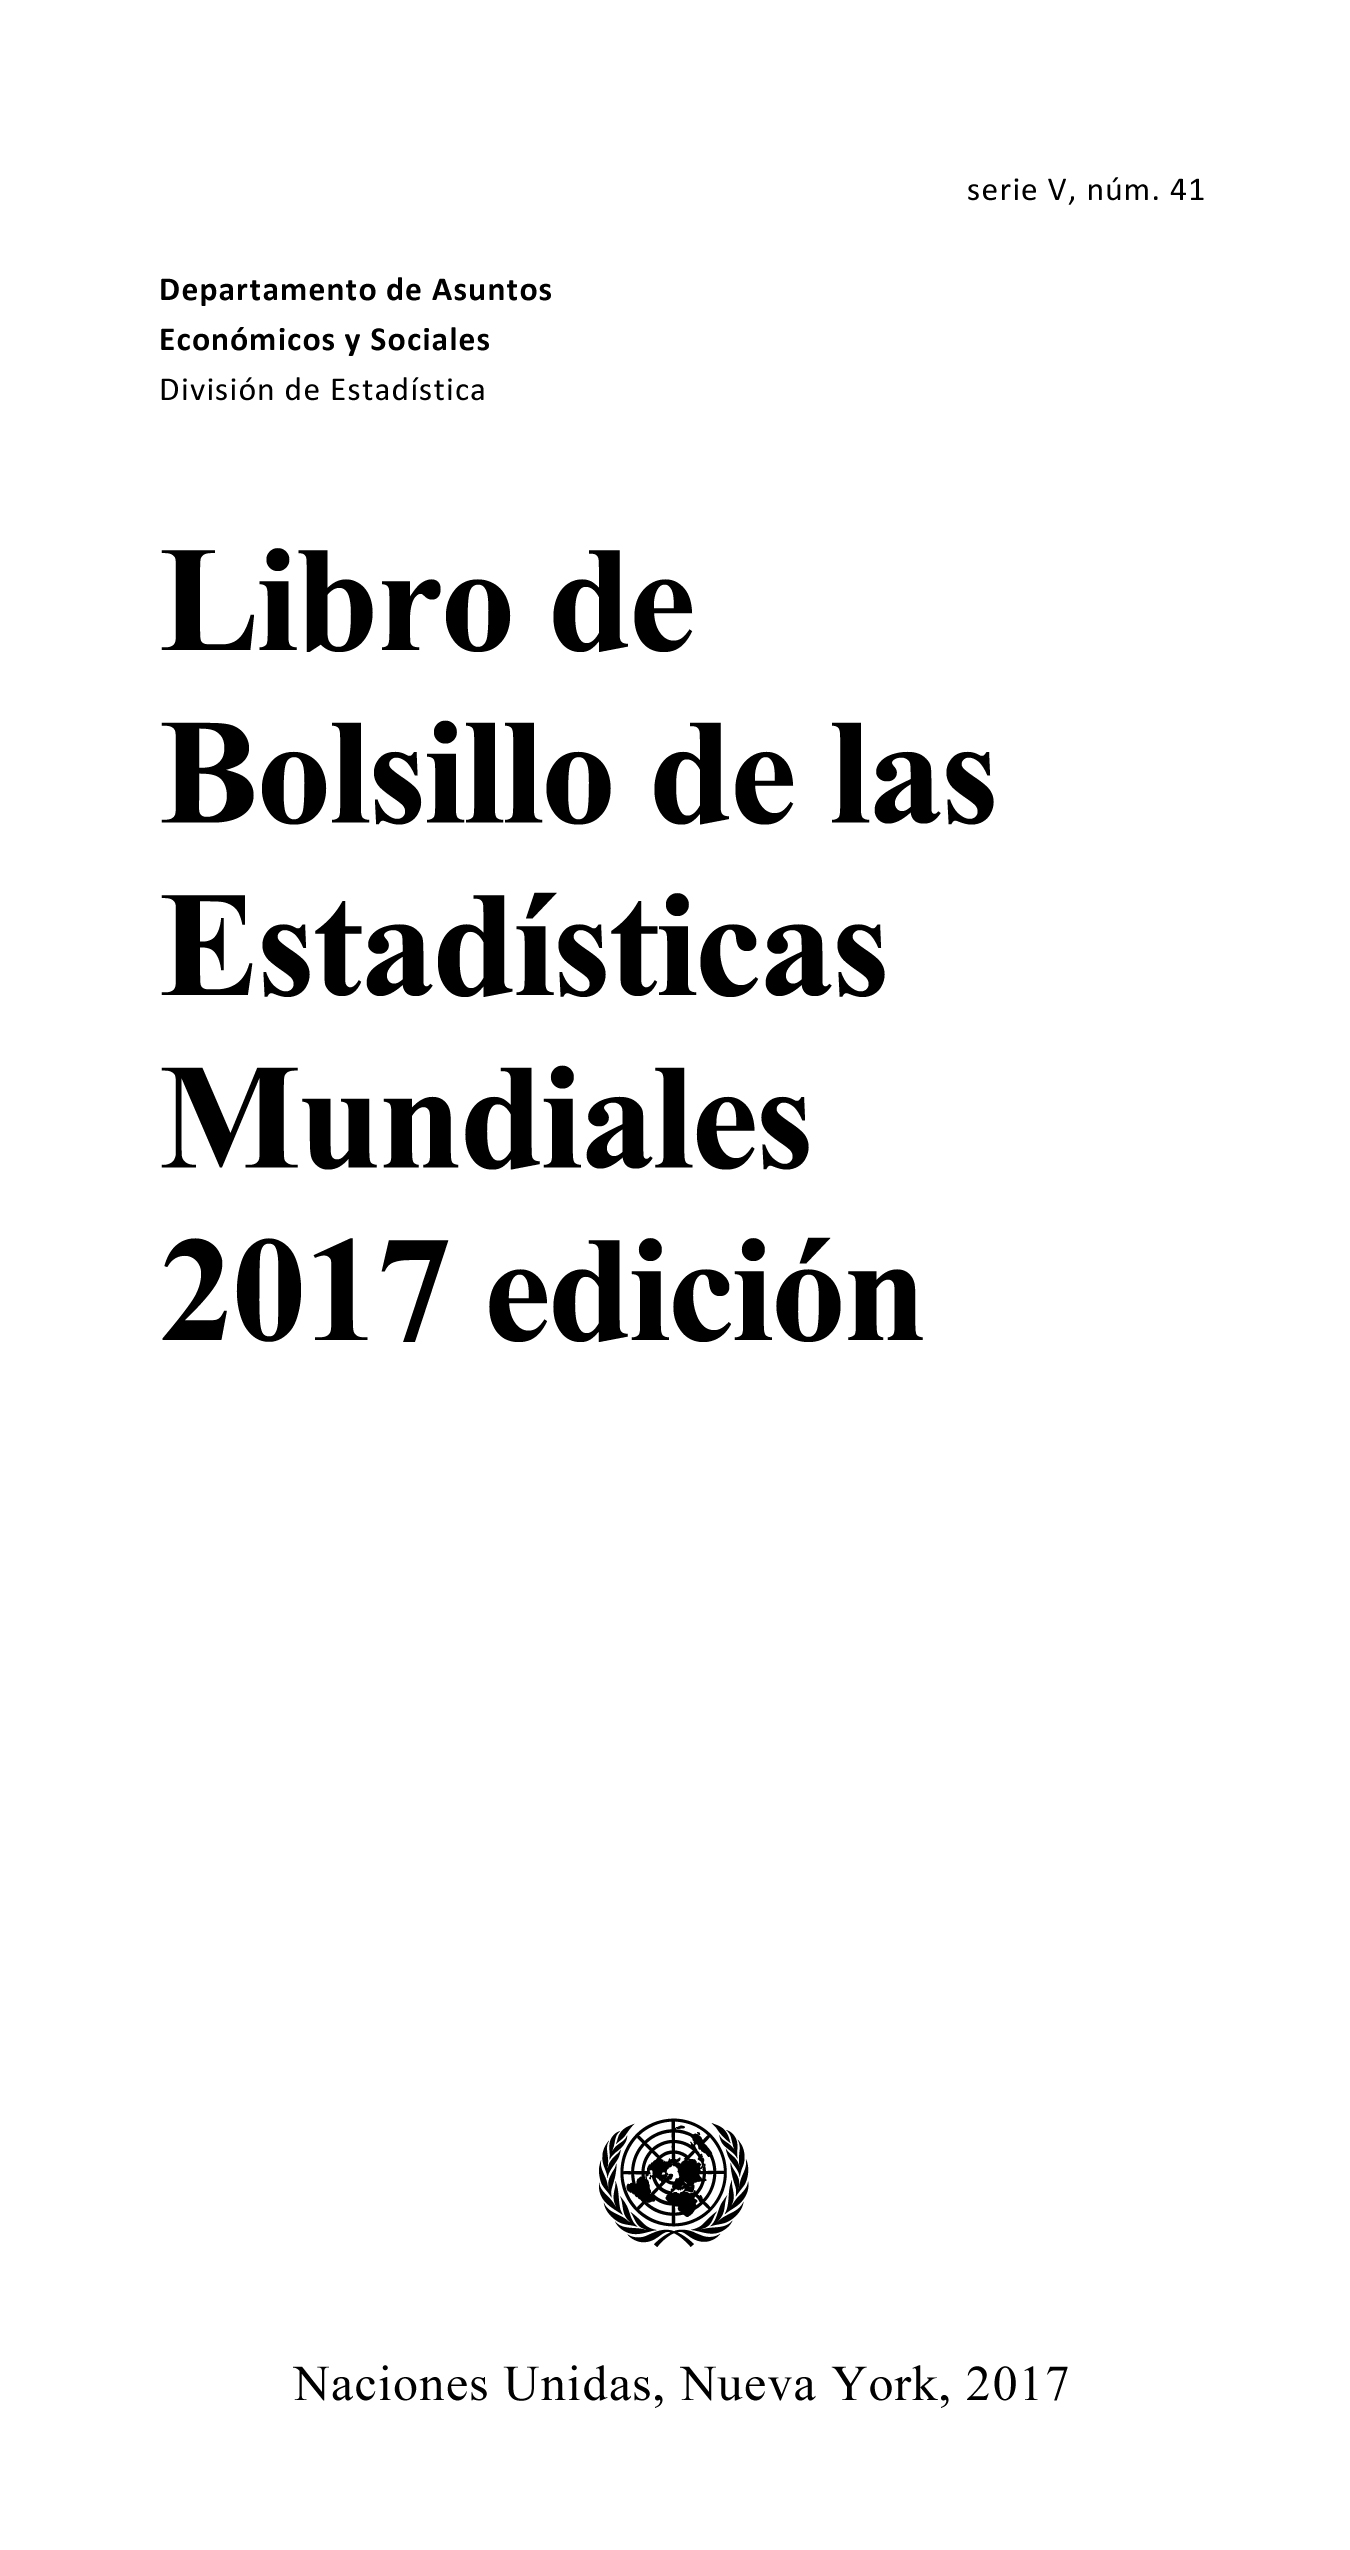 image of Libro de bolsillo de las estadisticas mundiales 2017